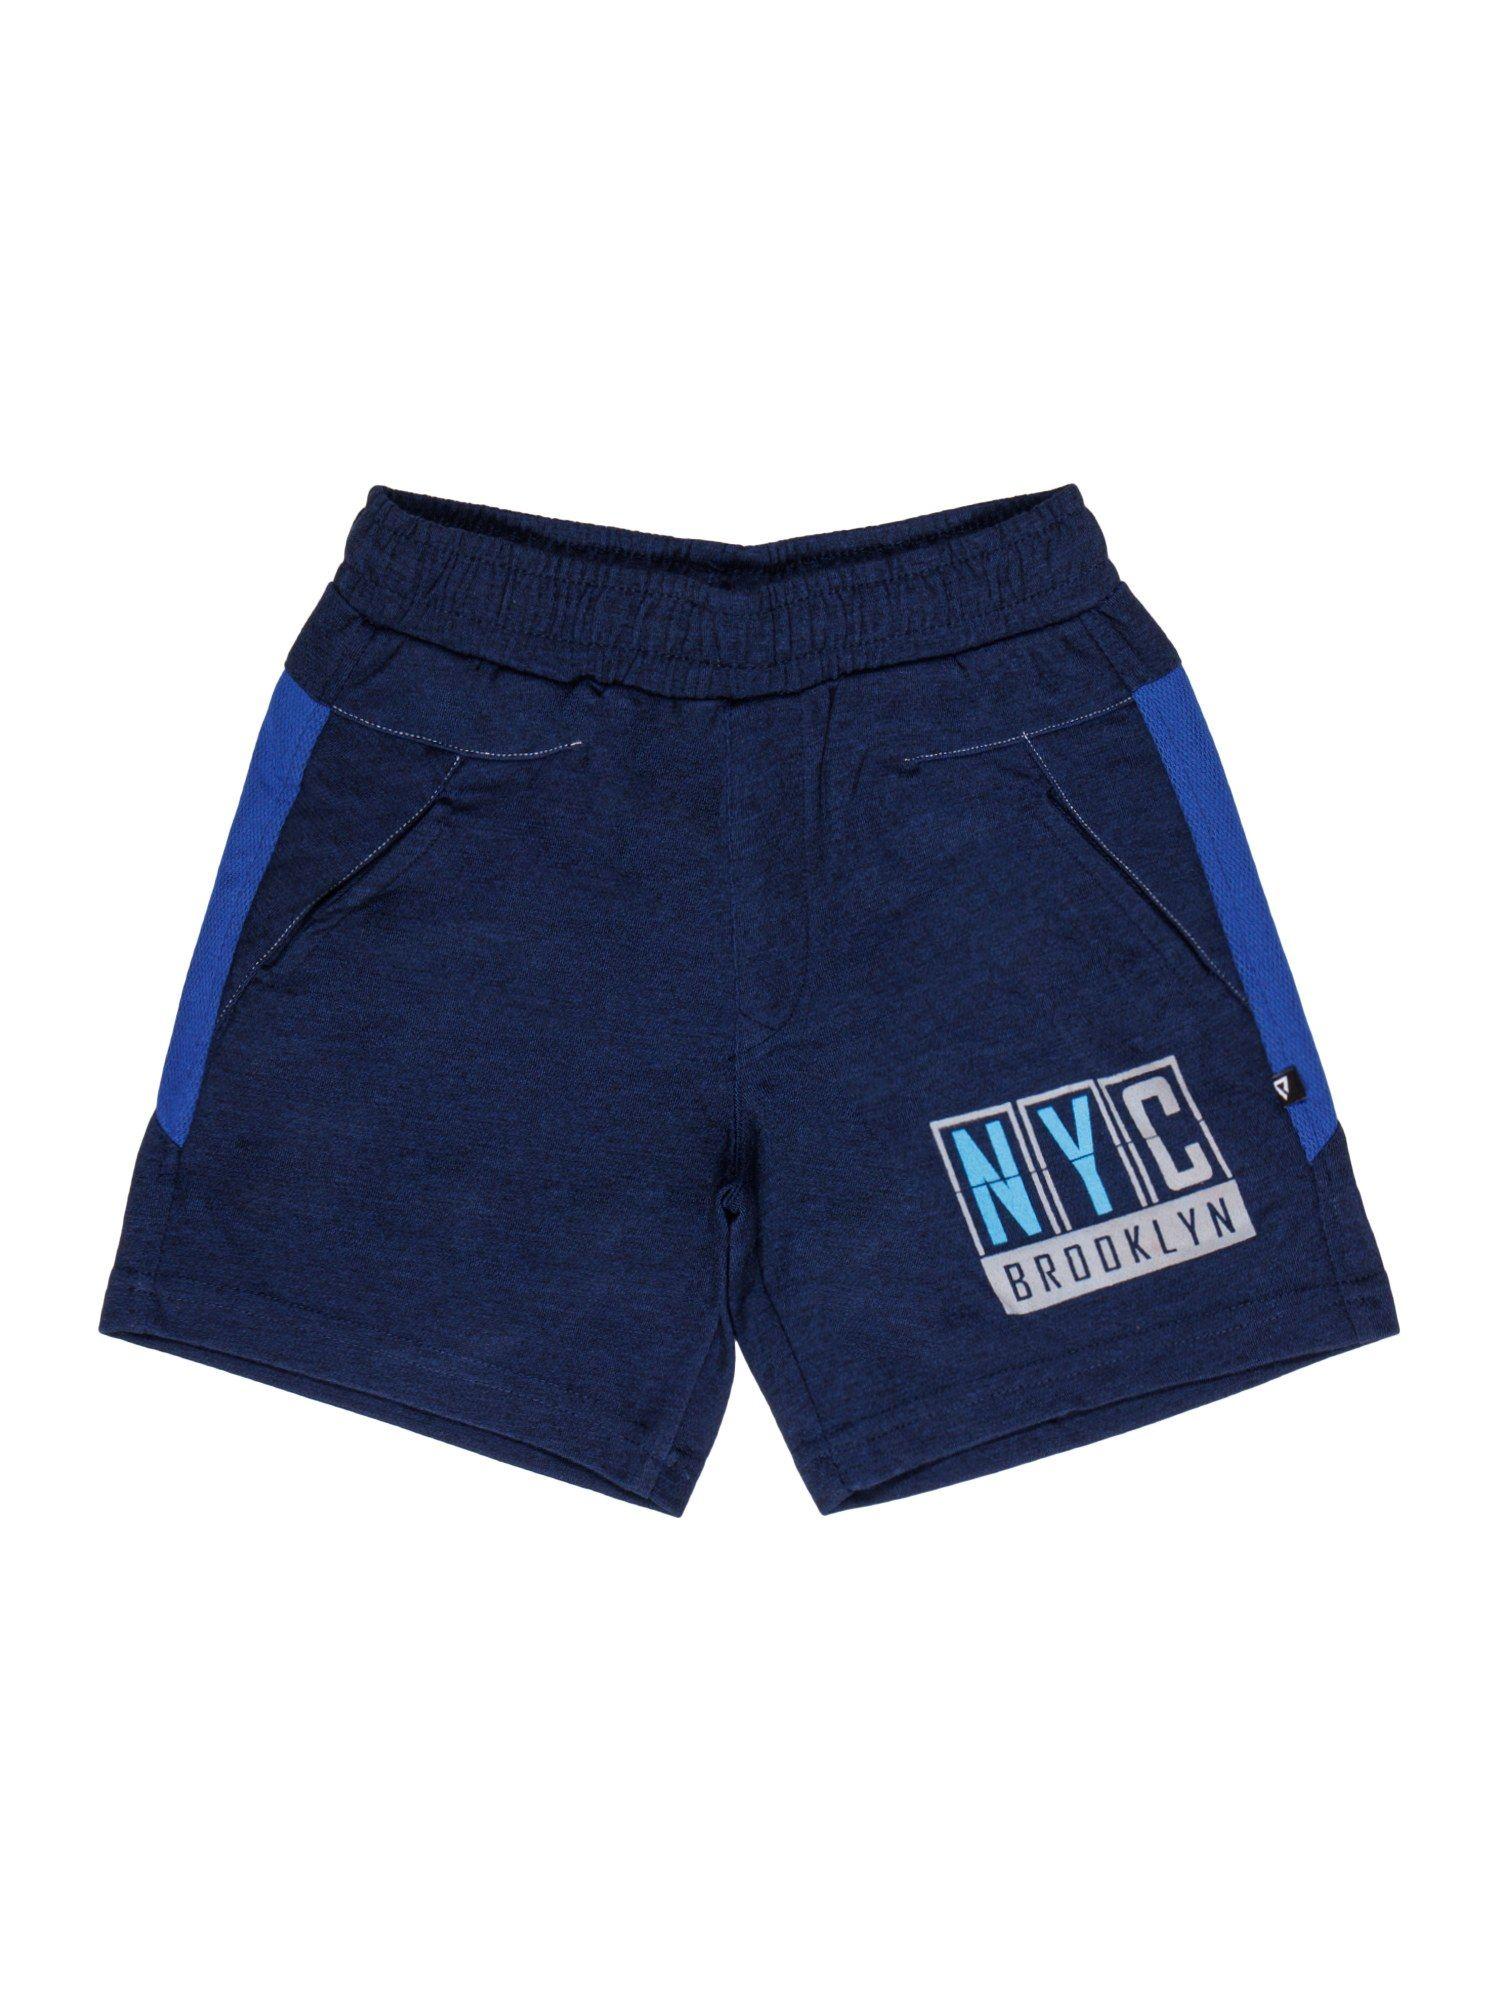 printed shorts-blue